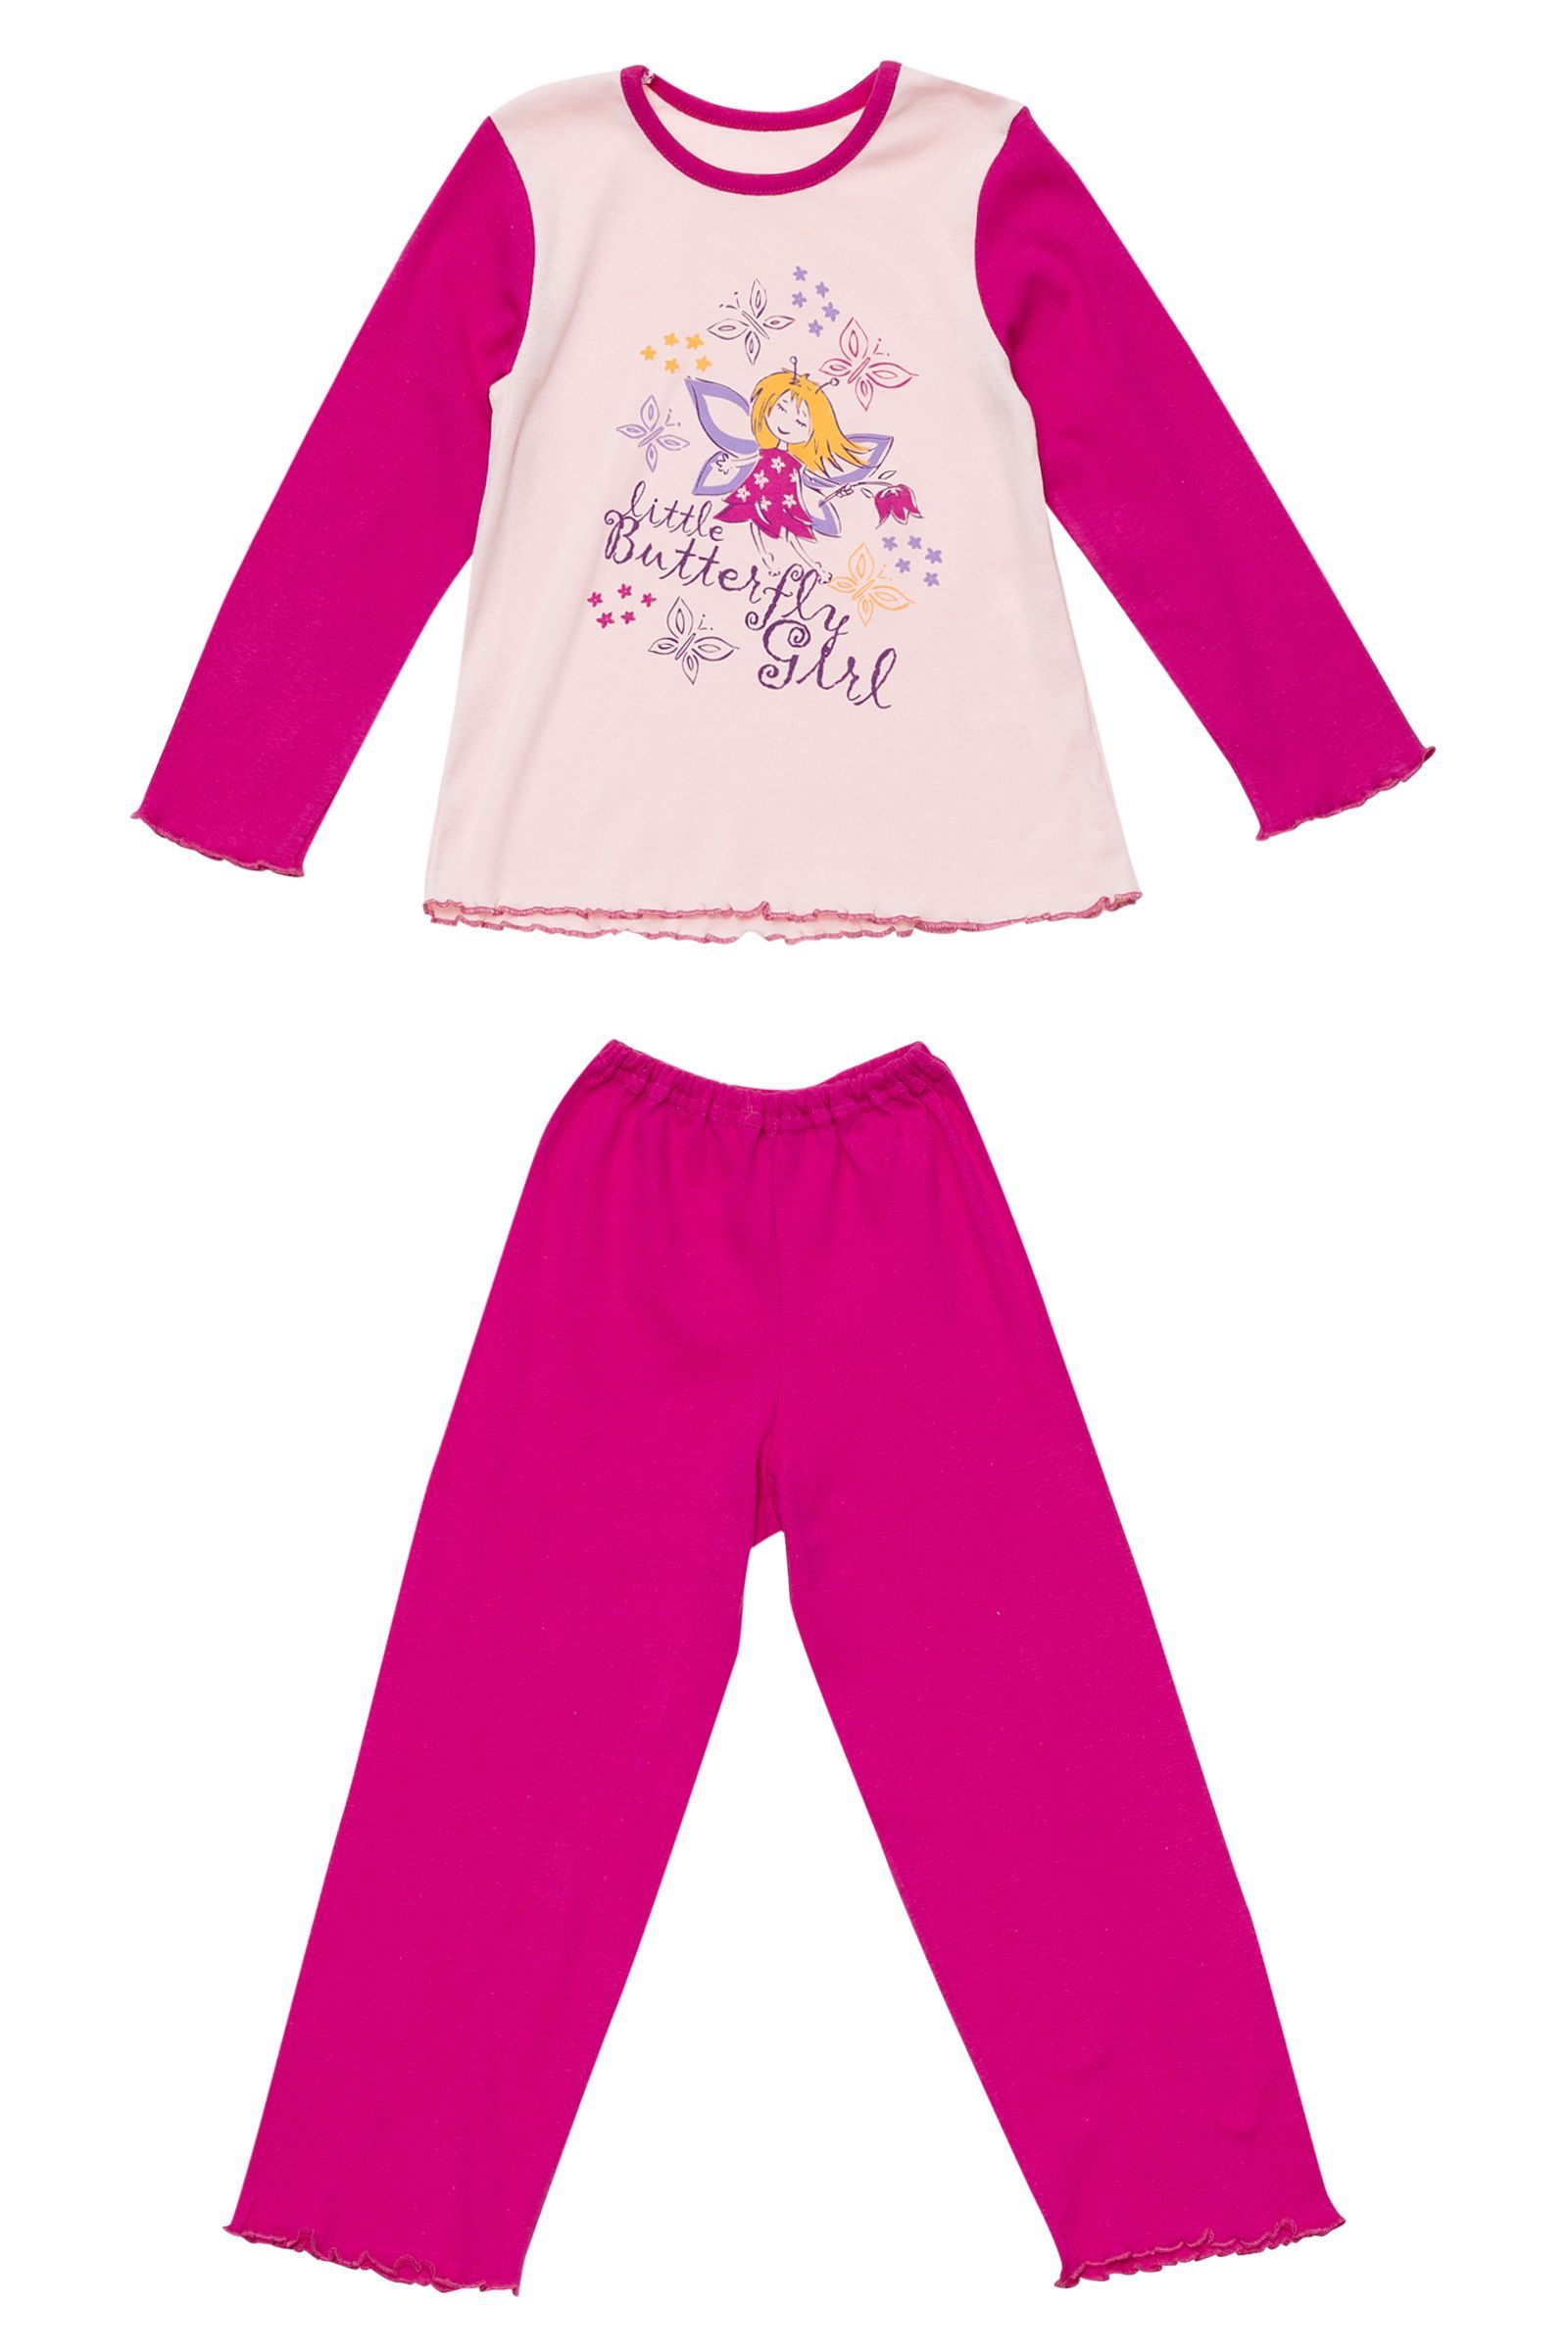 Пижама-ПЖ03-1500 оптом от производителя детской одежды 'Алёна'